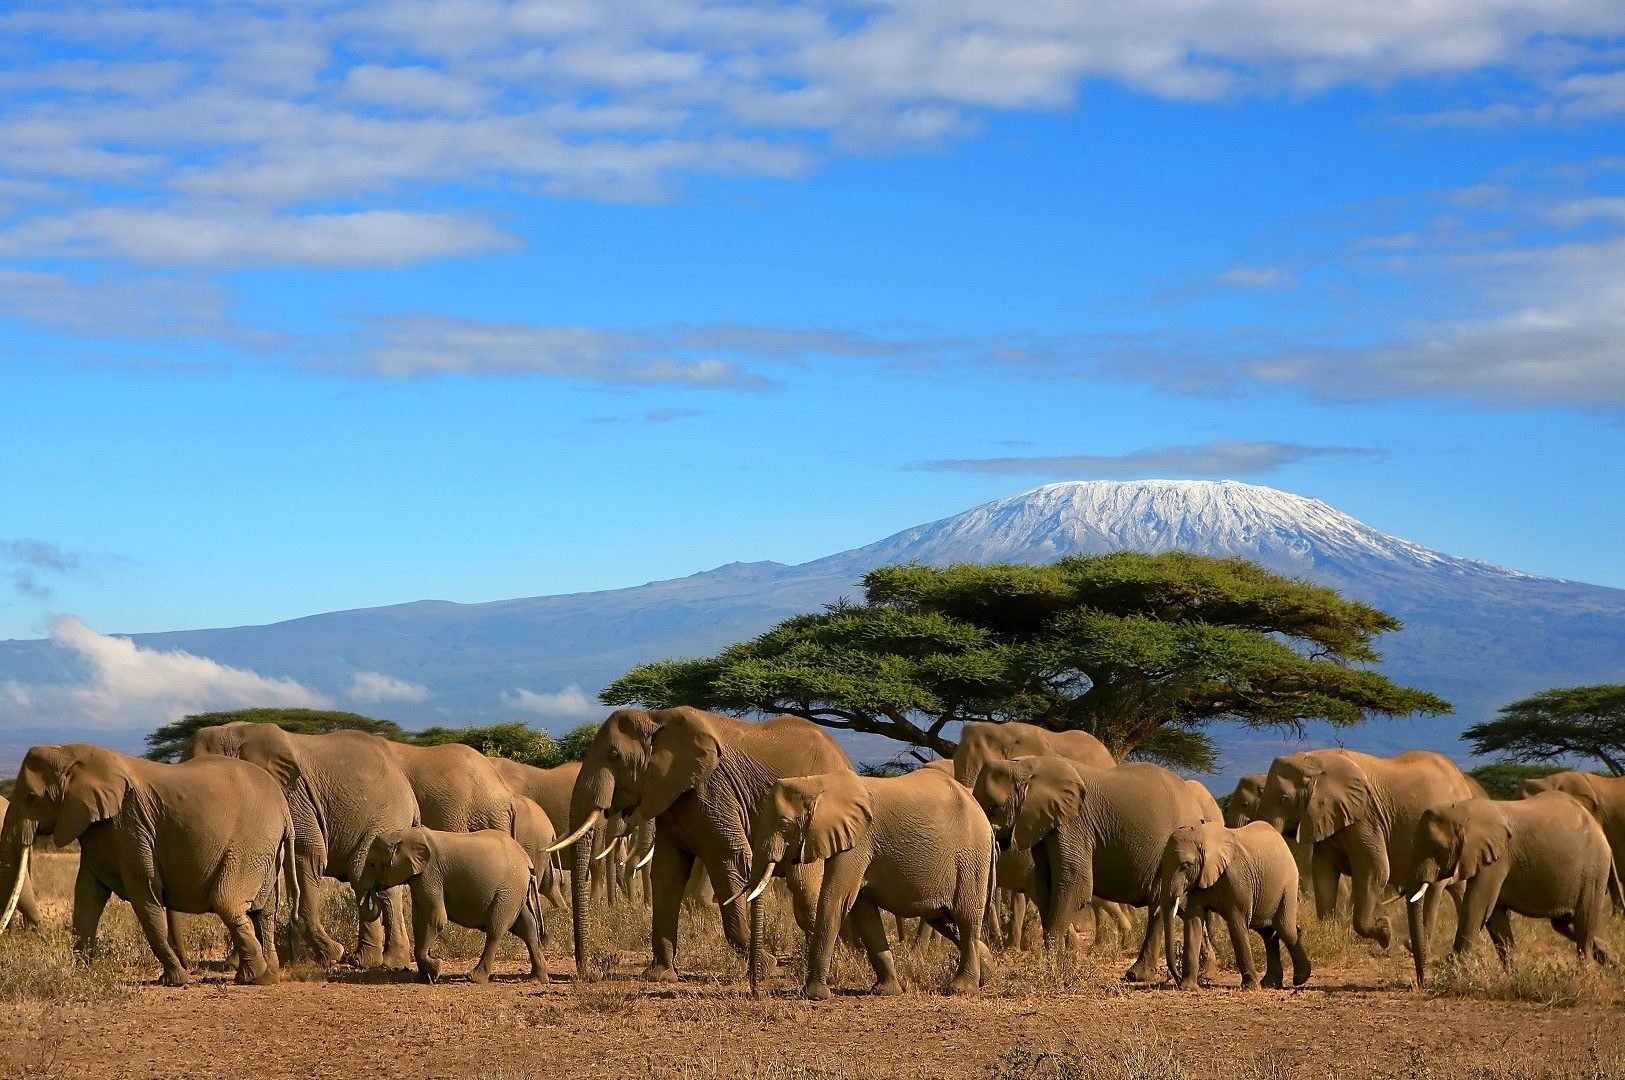 Kilimanjaro With Elephant Herd